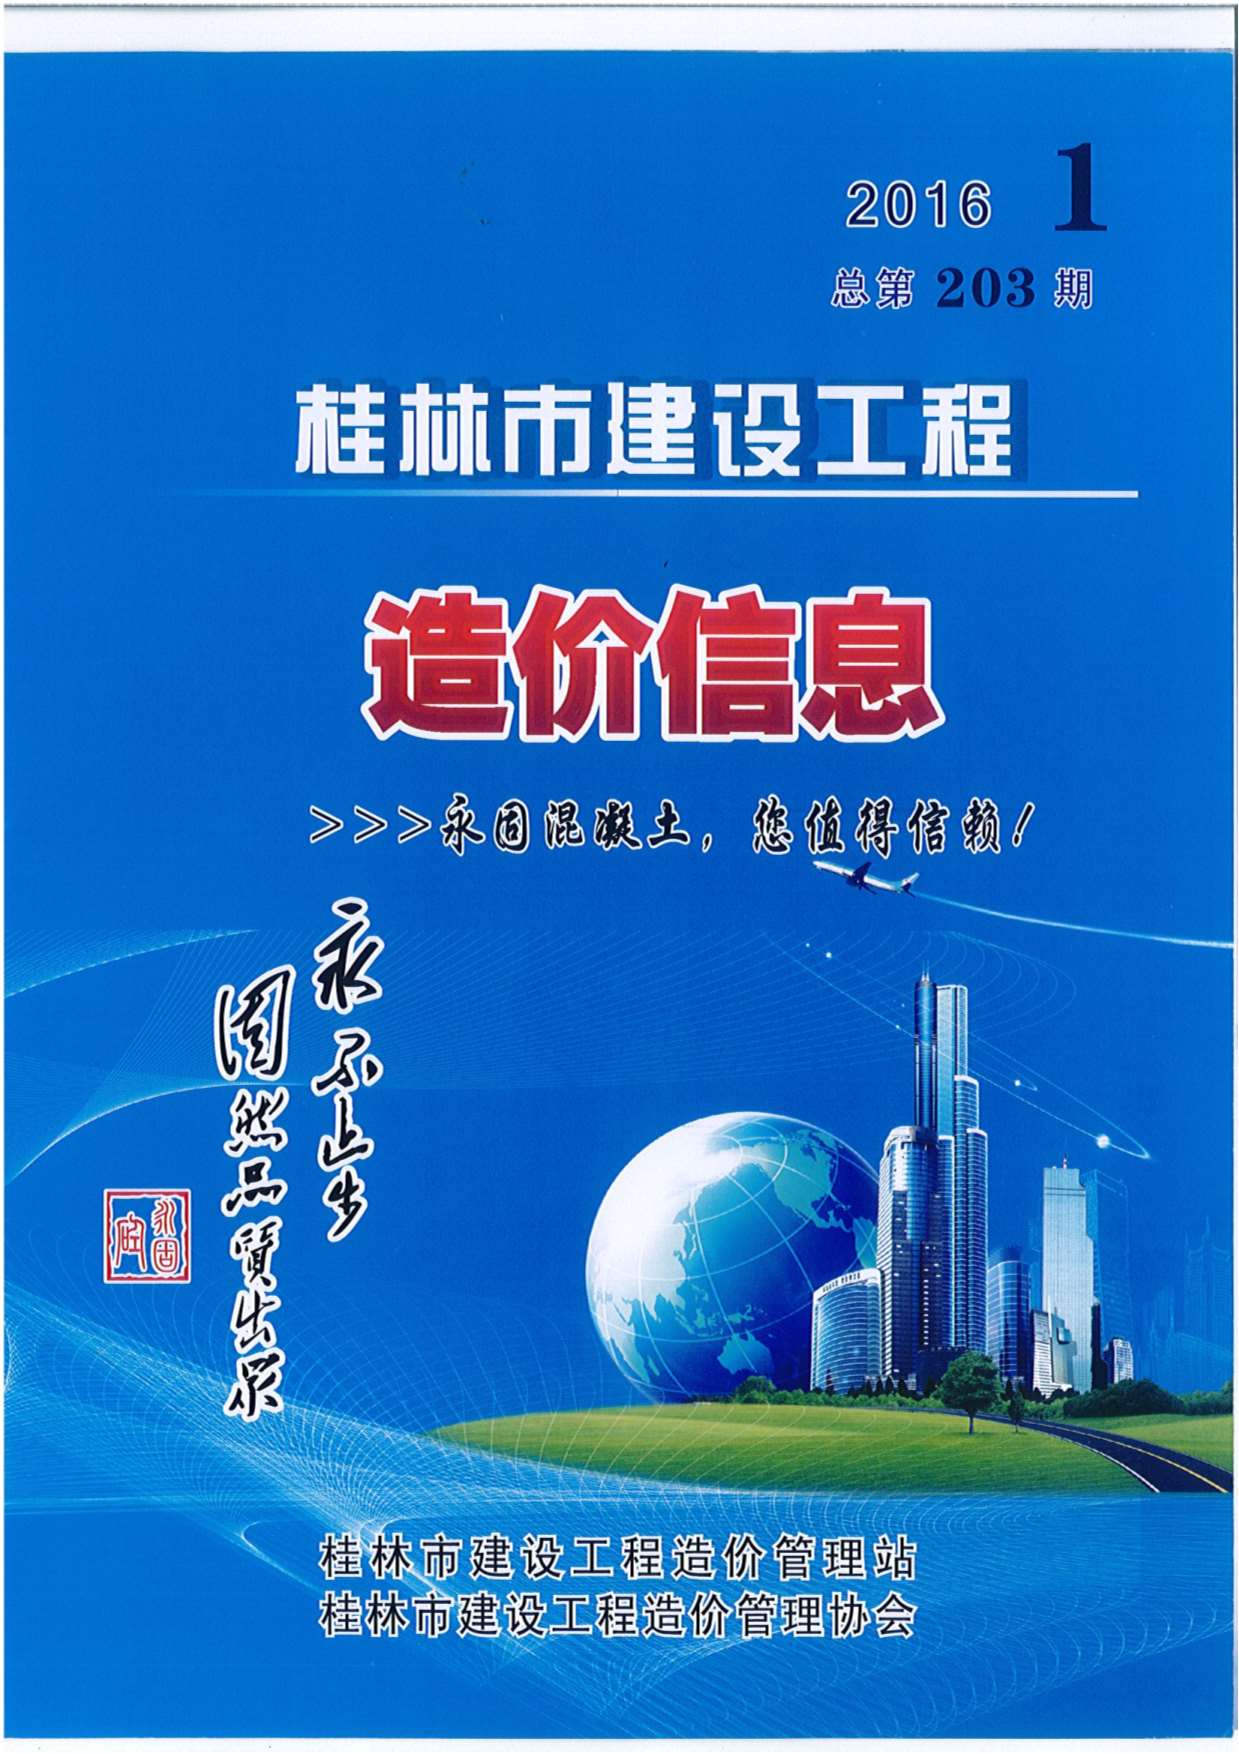 桂林市2016年1月建设工程造价信息